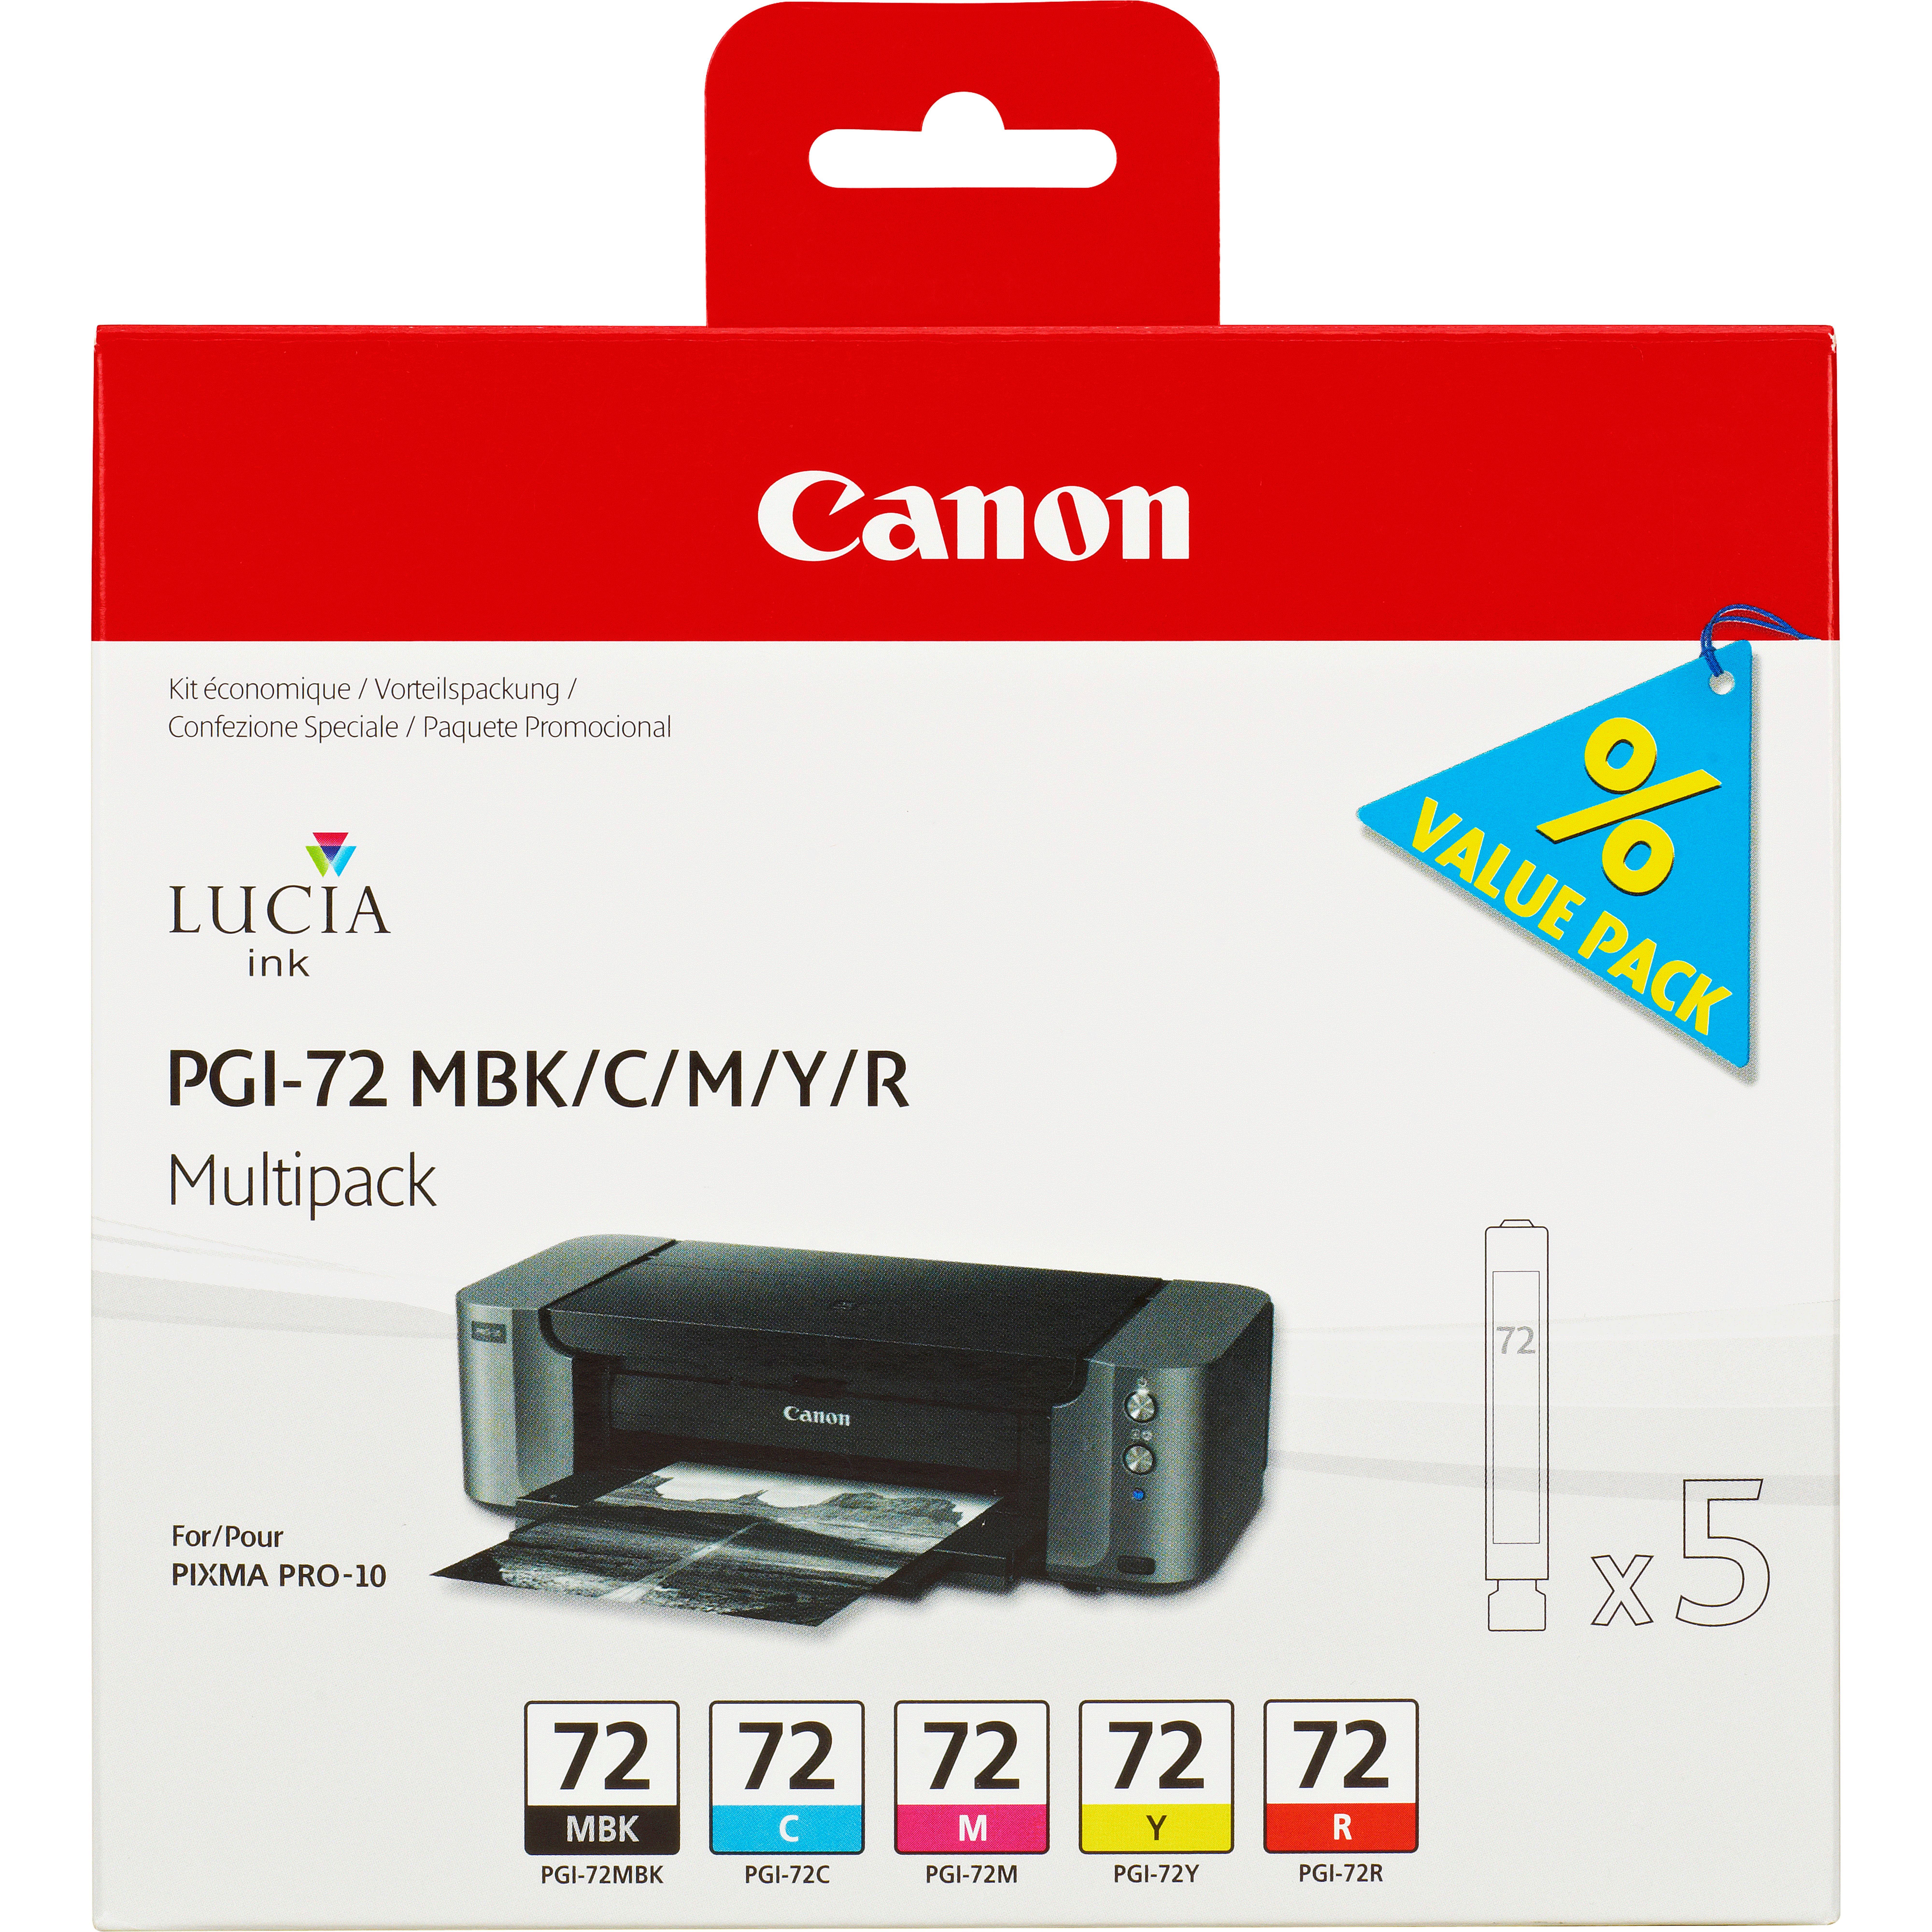 Canon Multipack Pgi-72 Mbk/c/m/y/r